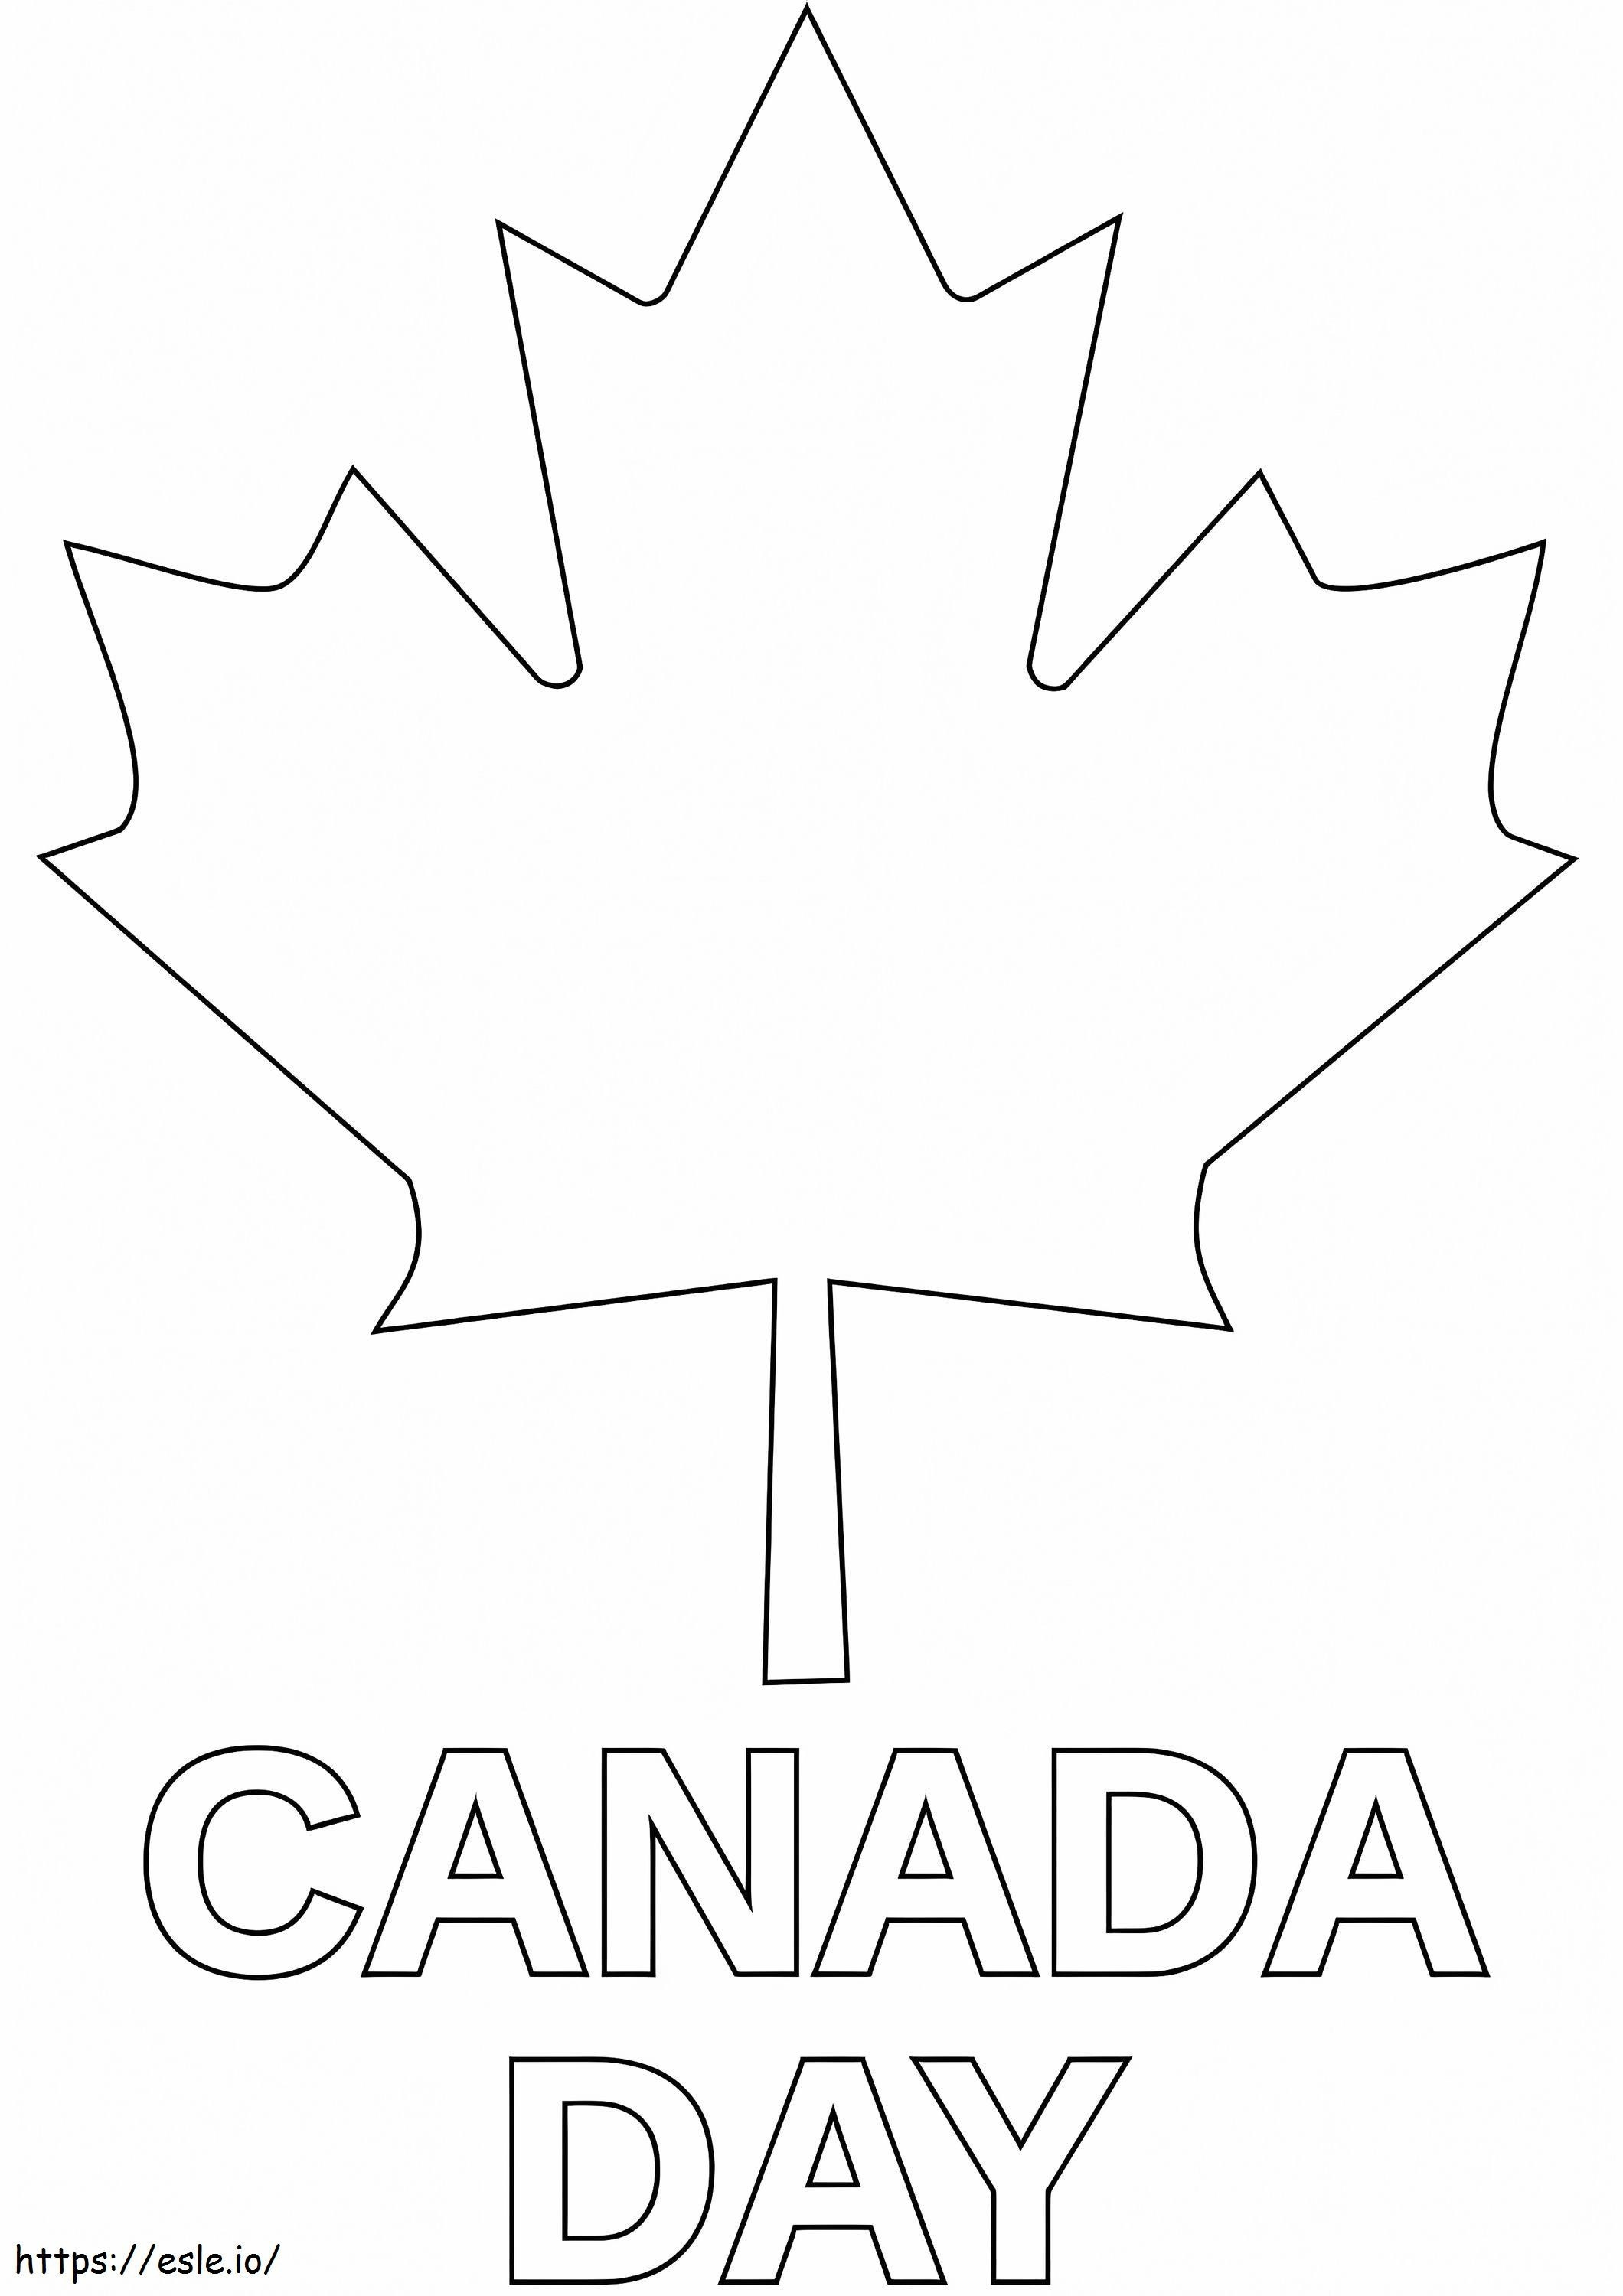 Canadadag 1 kleurplaat kleurplaat